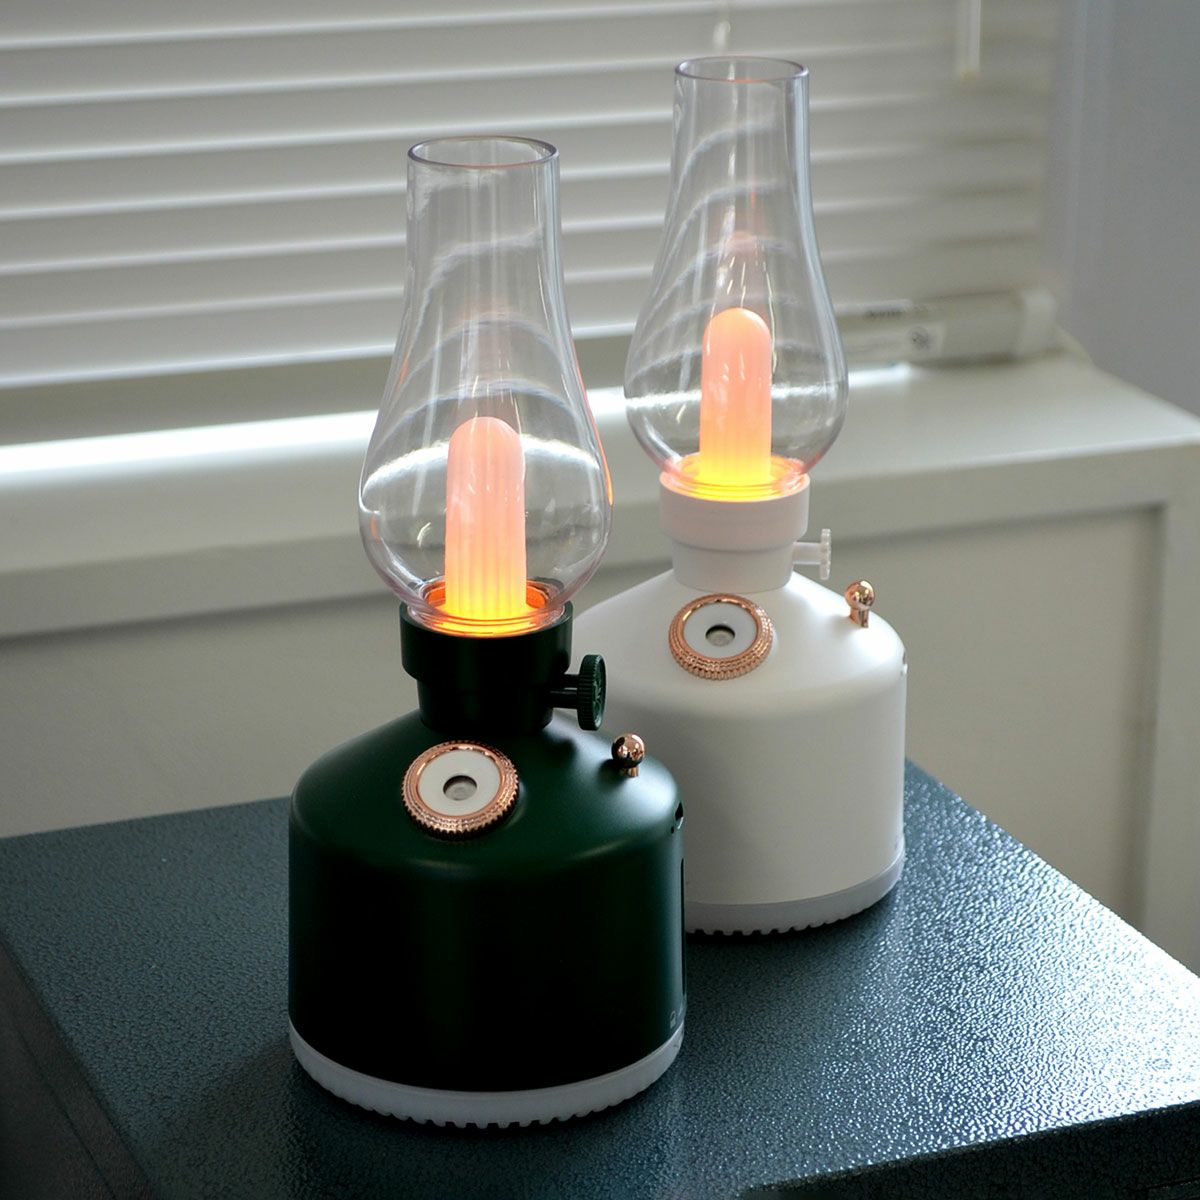 LEDランタン＆ディフューザー 照明 ランプ ランタン 卓上加湿器